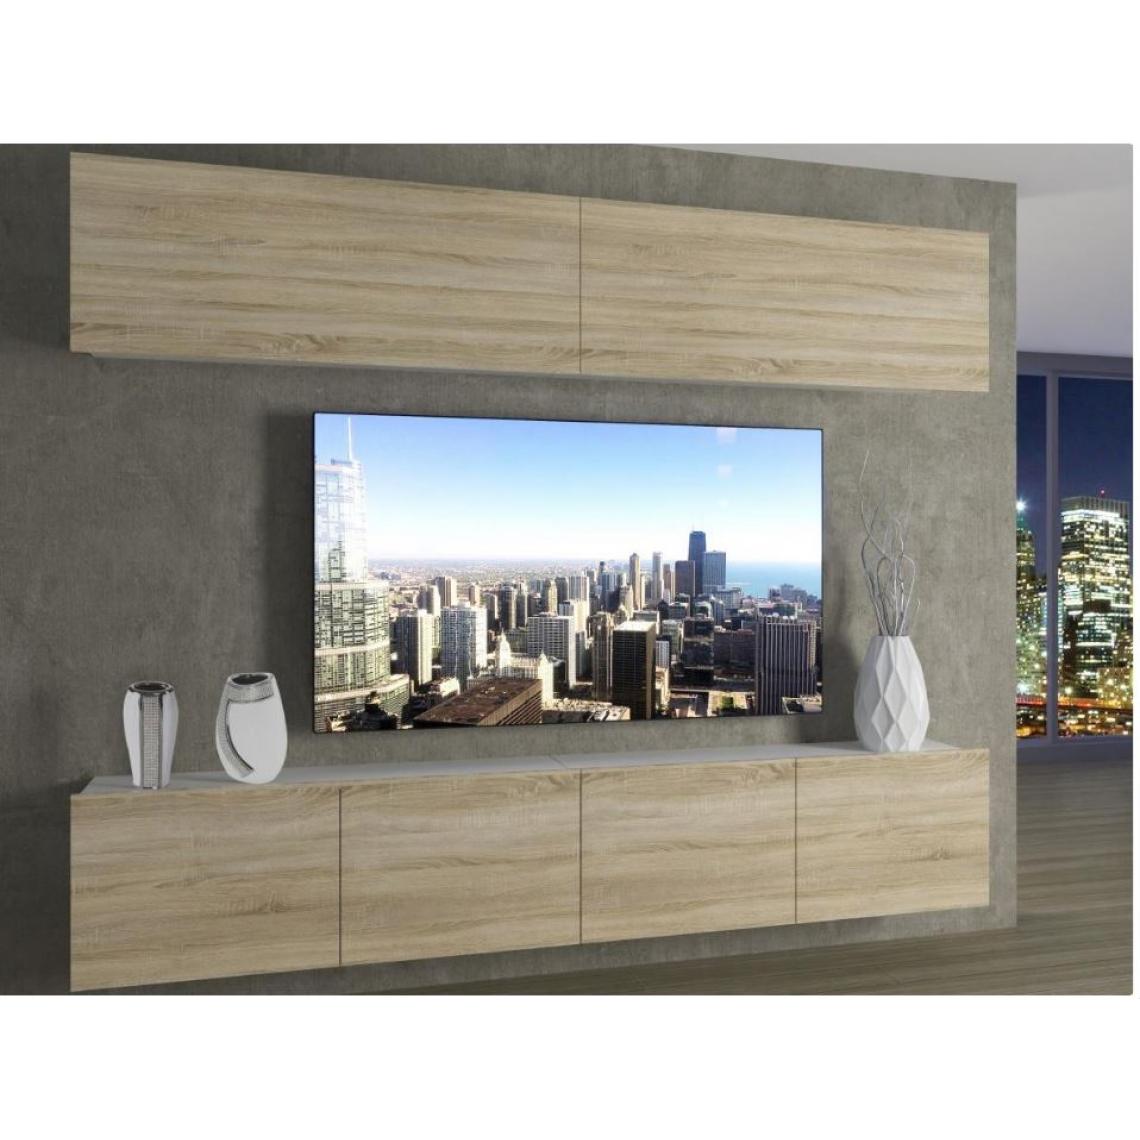 Hucoco - MORRIE - Ensemble meubles TV - Unité murale style moderne - Largeur 200 cm - Mur TV à suspendre - Aspect bois - Sonoma - Meubles TV, Hi-Fi